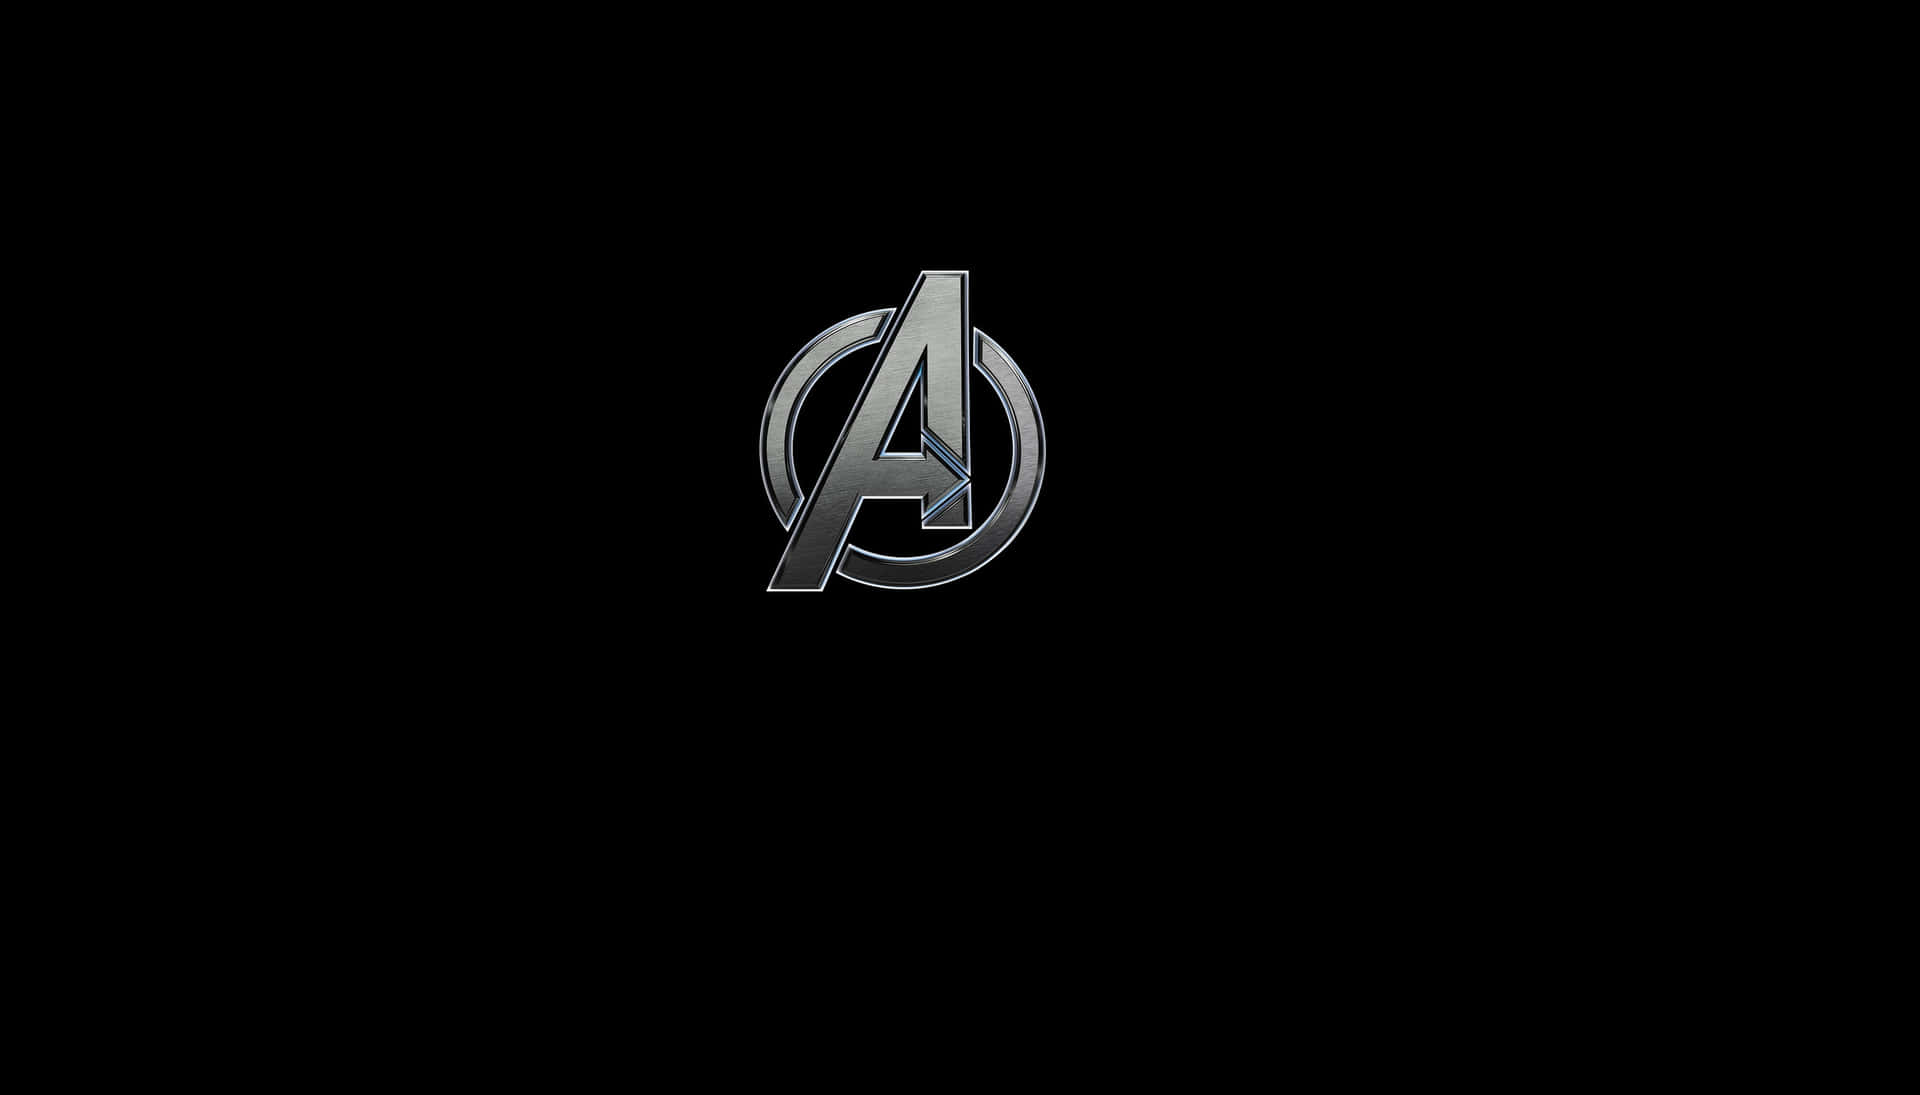 Avengers Logo Black Background Wallpaper